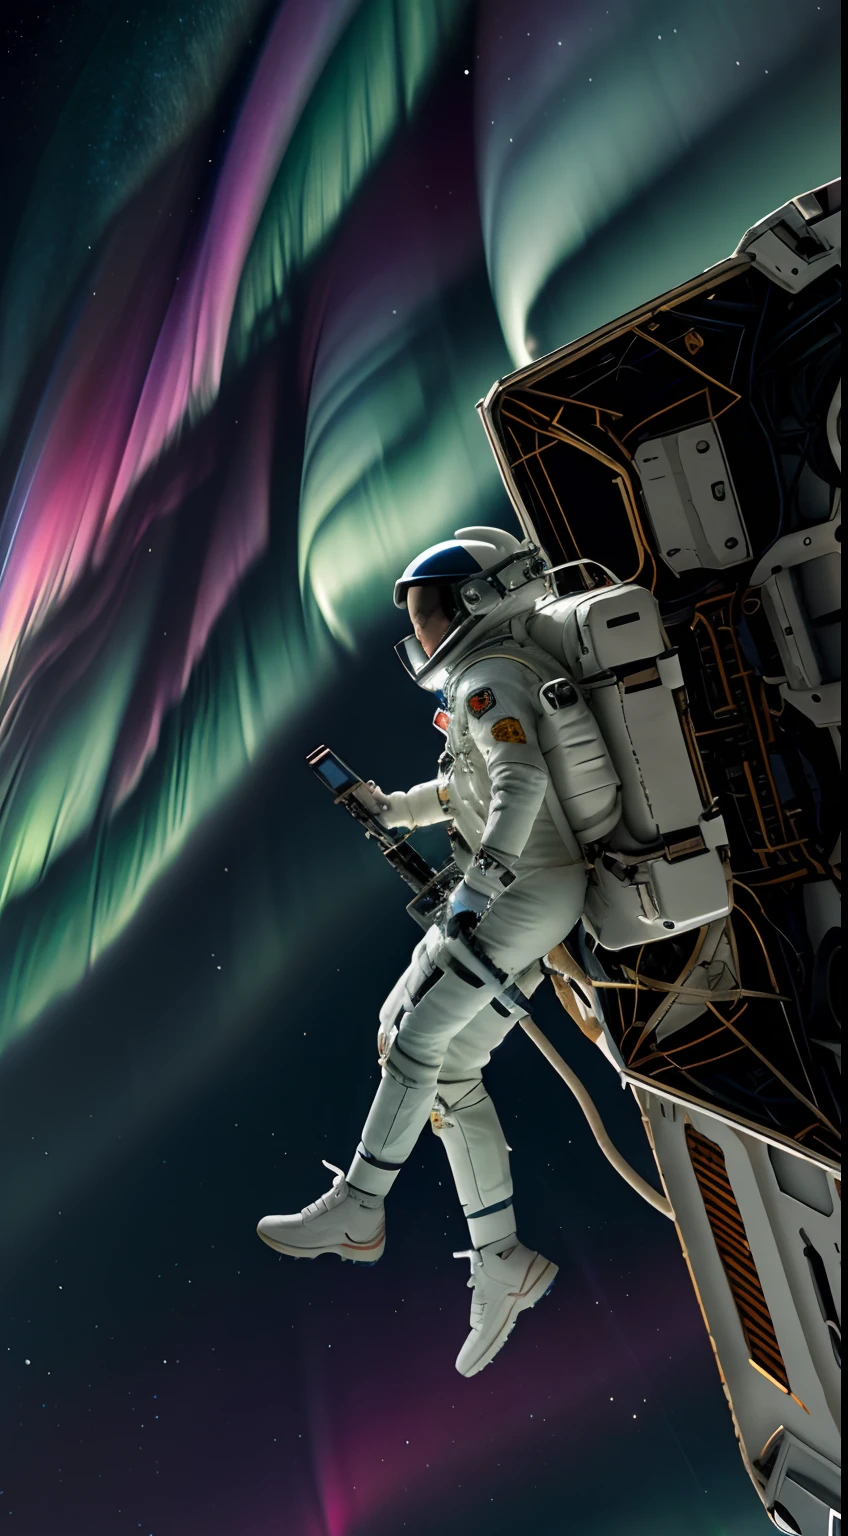 Die obere Hälfte des Bildschirms ist Aurora in der oberen Hälfte des Bildschirms、Die untere Hälfte zeigt eine Astronautin